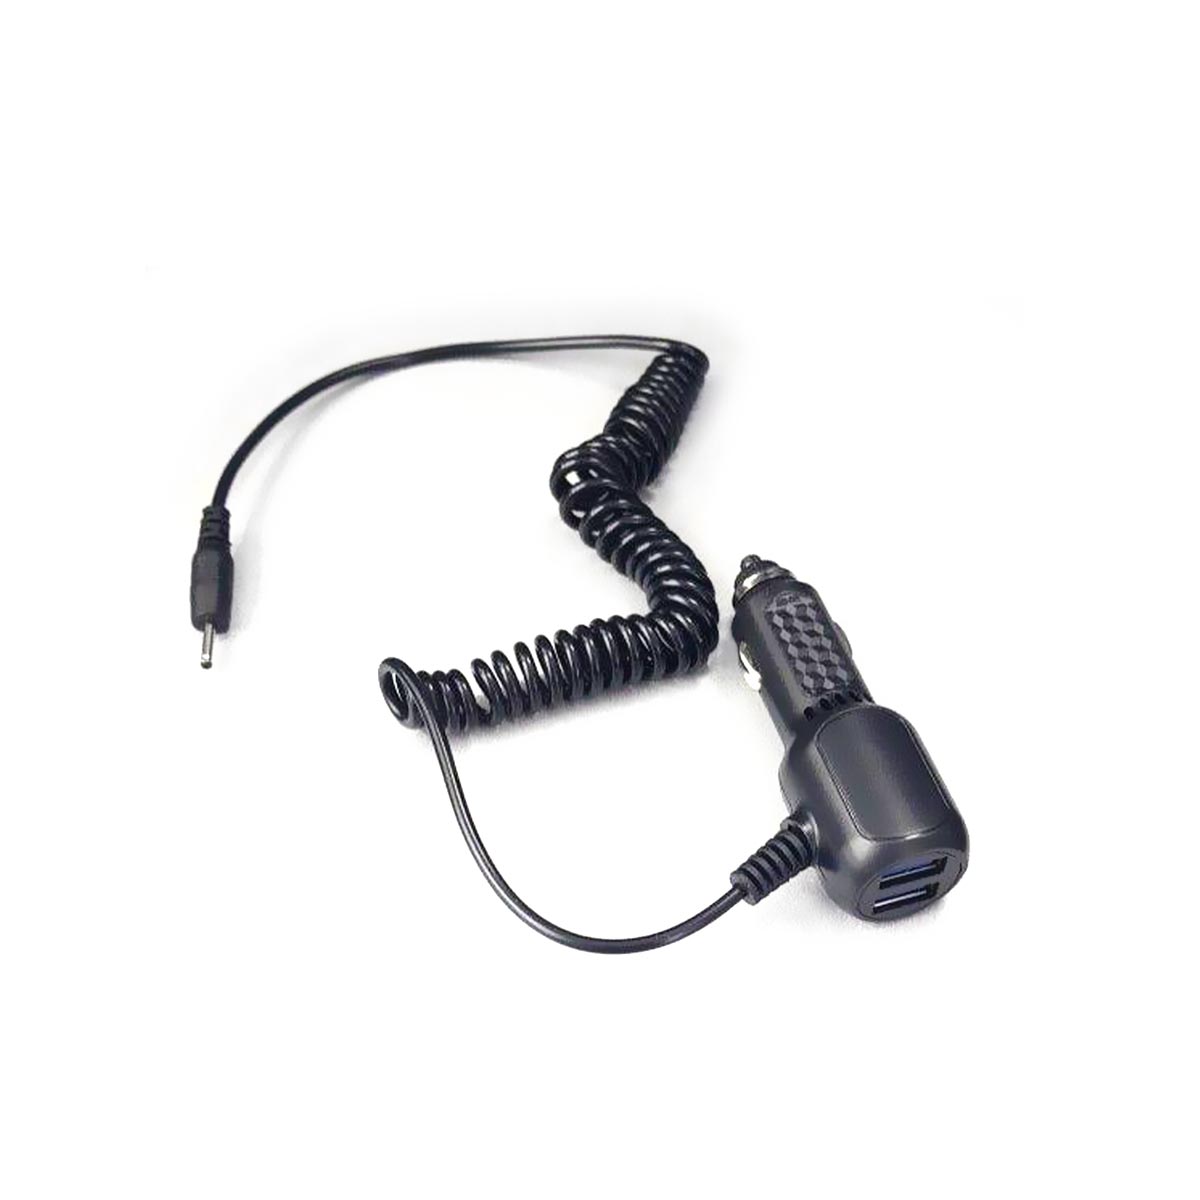 АЗУ (Автомобильное зарядное устройство) SY-14, 2 USB - 5V/2.1A, штекер 2.5x0.7, витой кабель, цвет черный